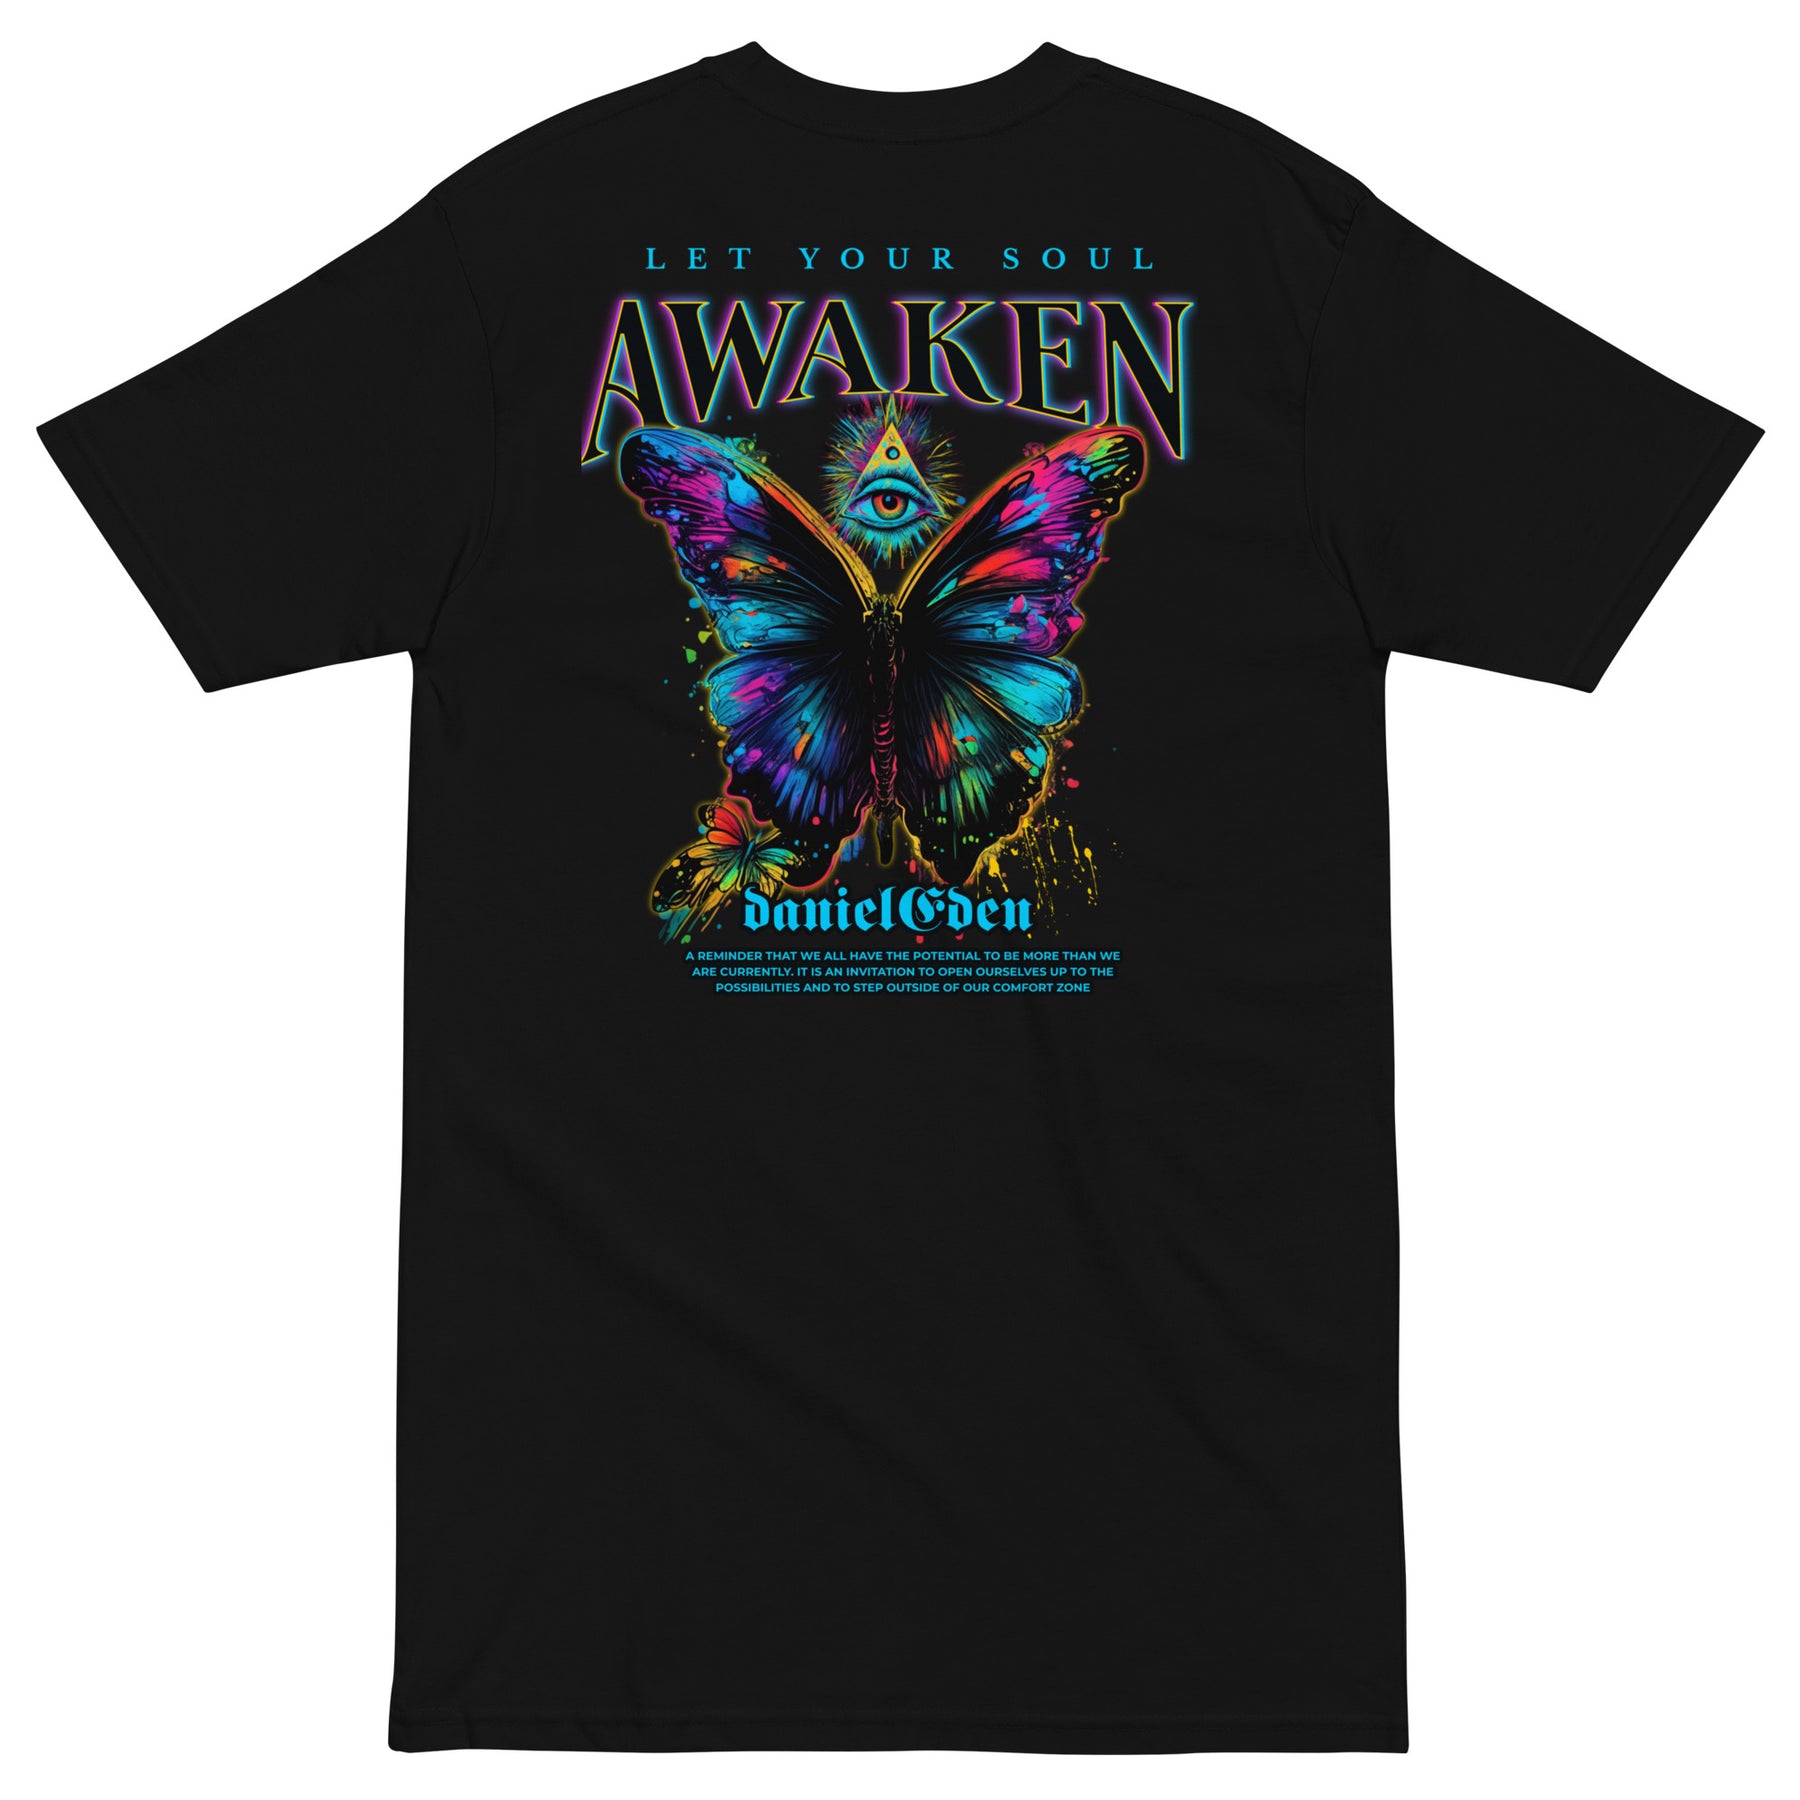 DanielEden Premium tee " Awaken "